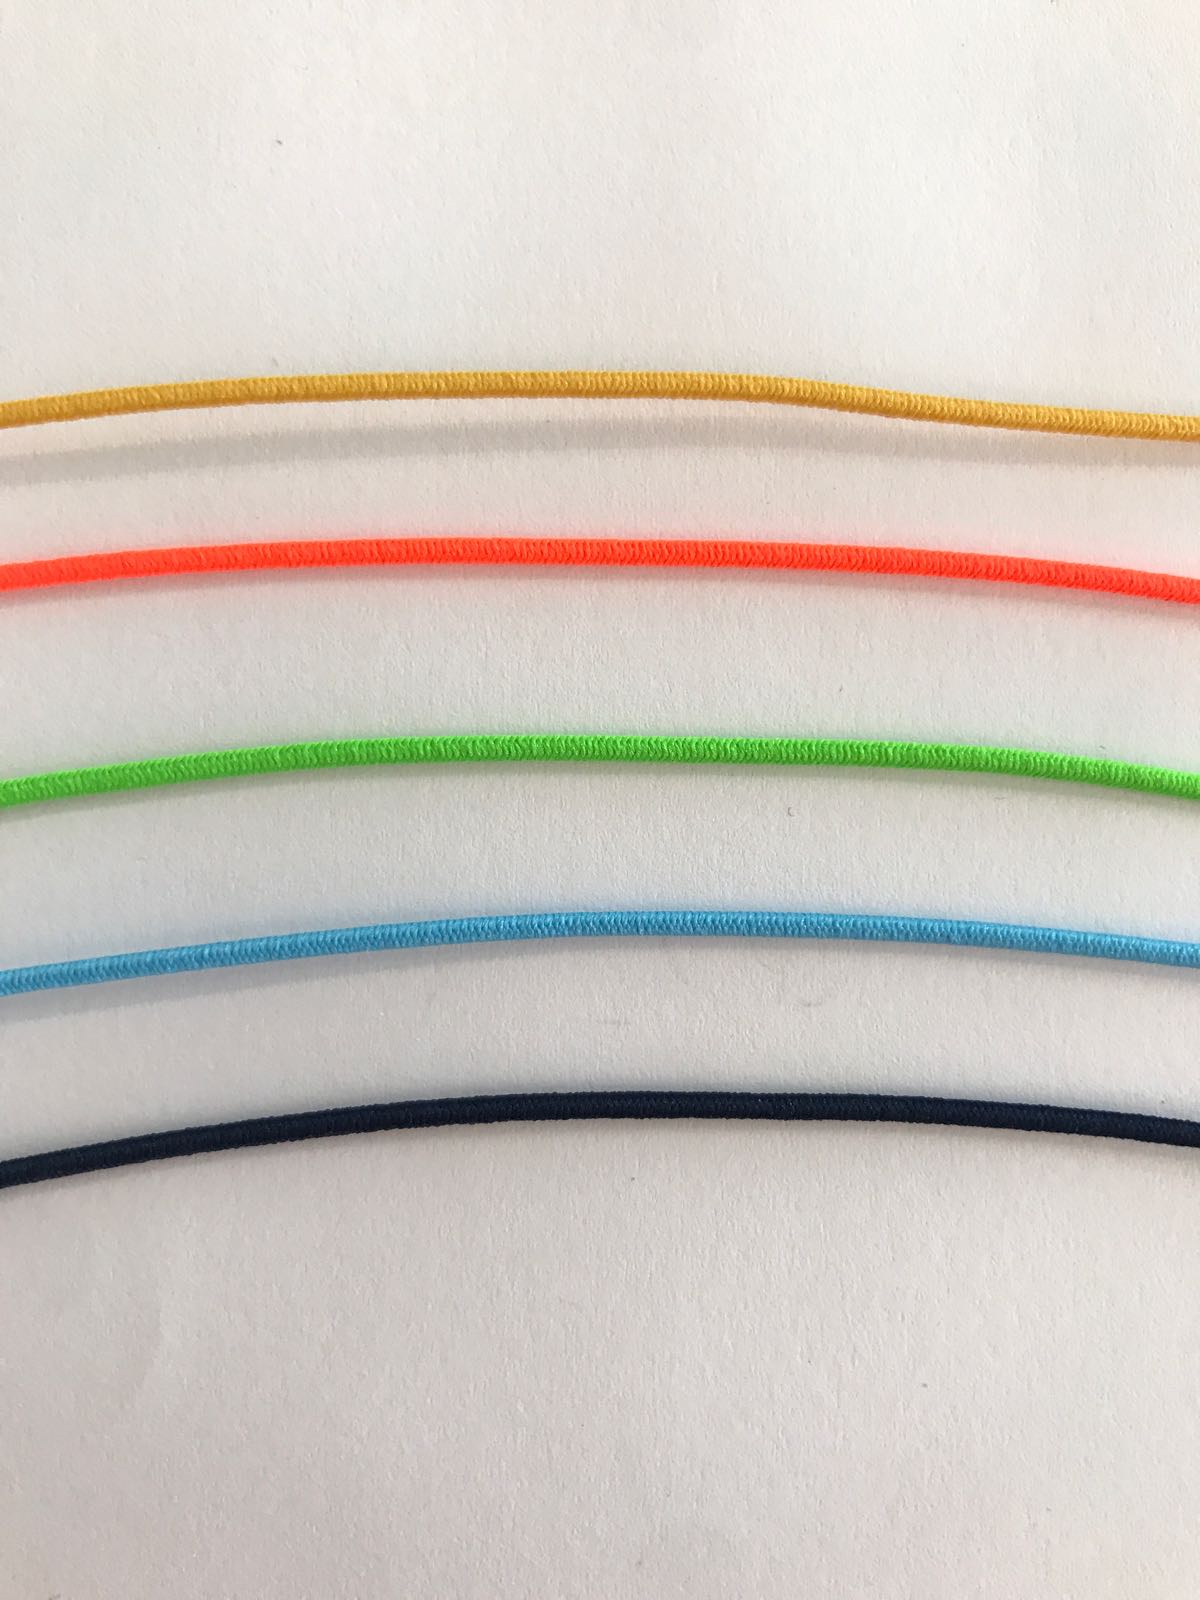 Round elastic cord 1.4 mm